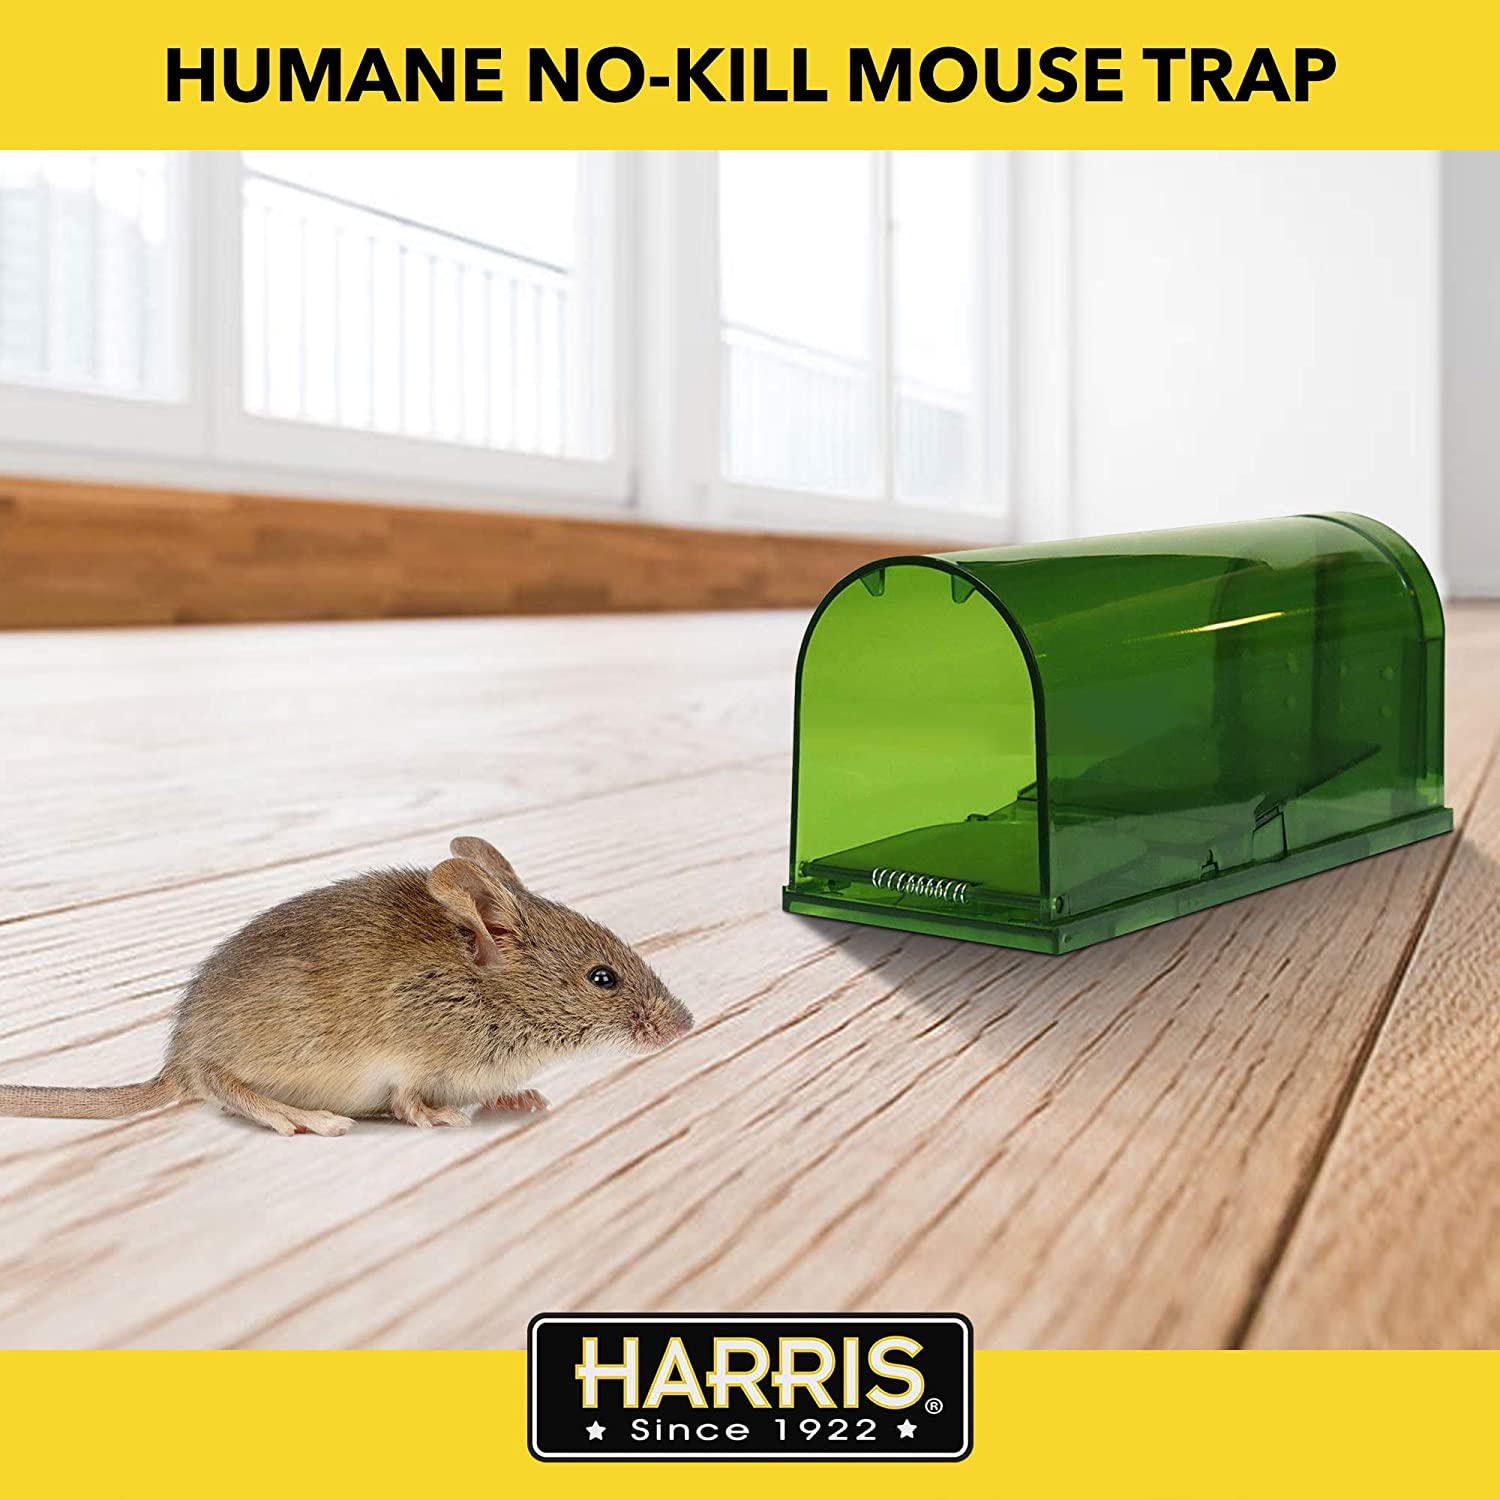 Live Mouse Traps, 3 Pieces, Mouse Traps, Snap Traps, Live Mouse